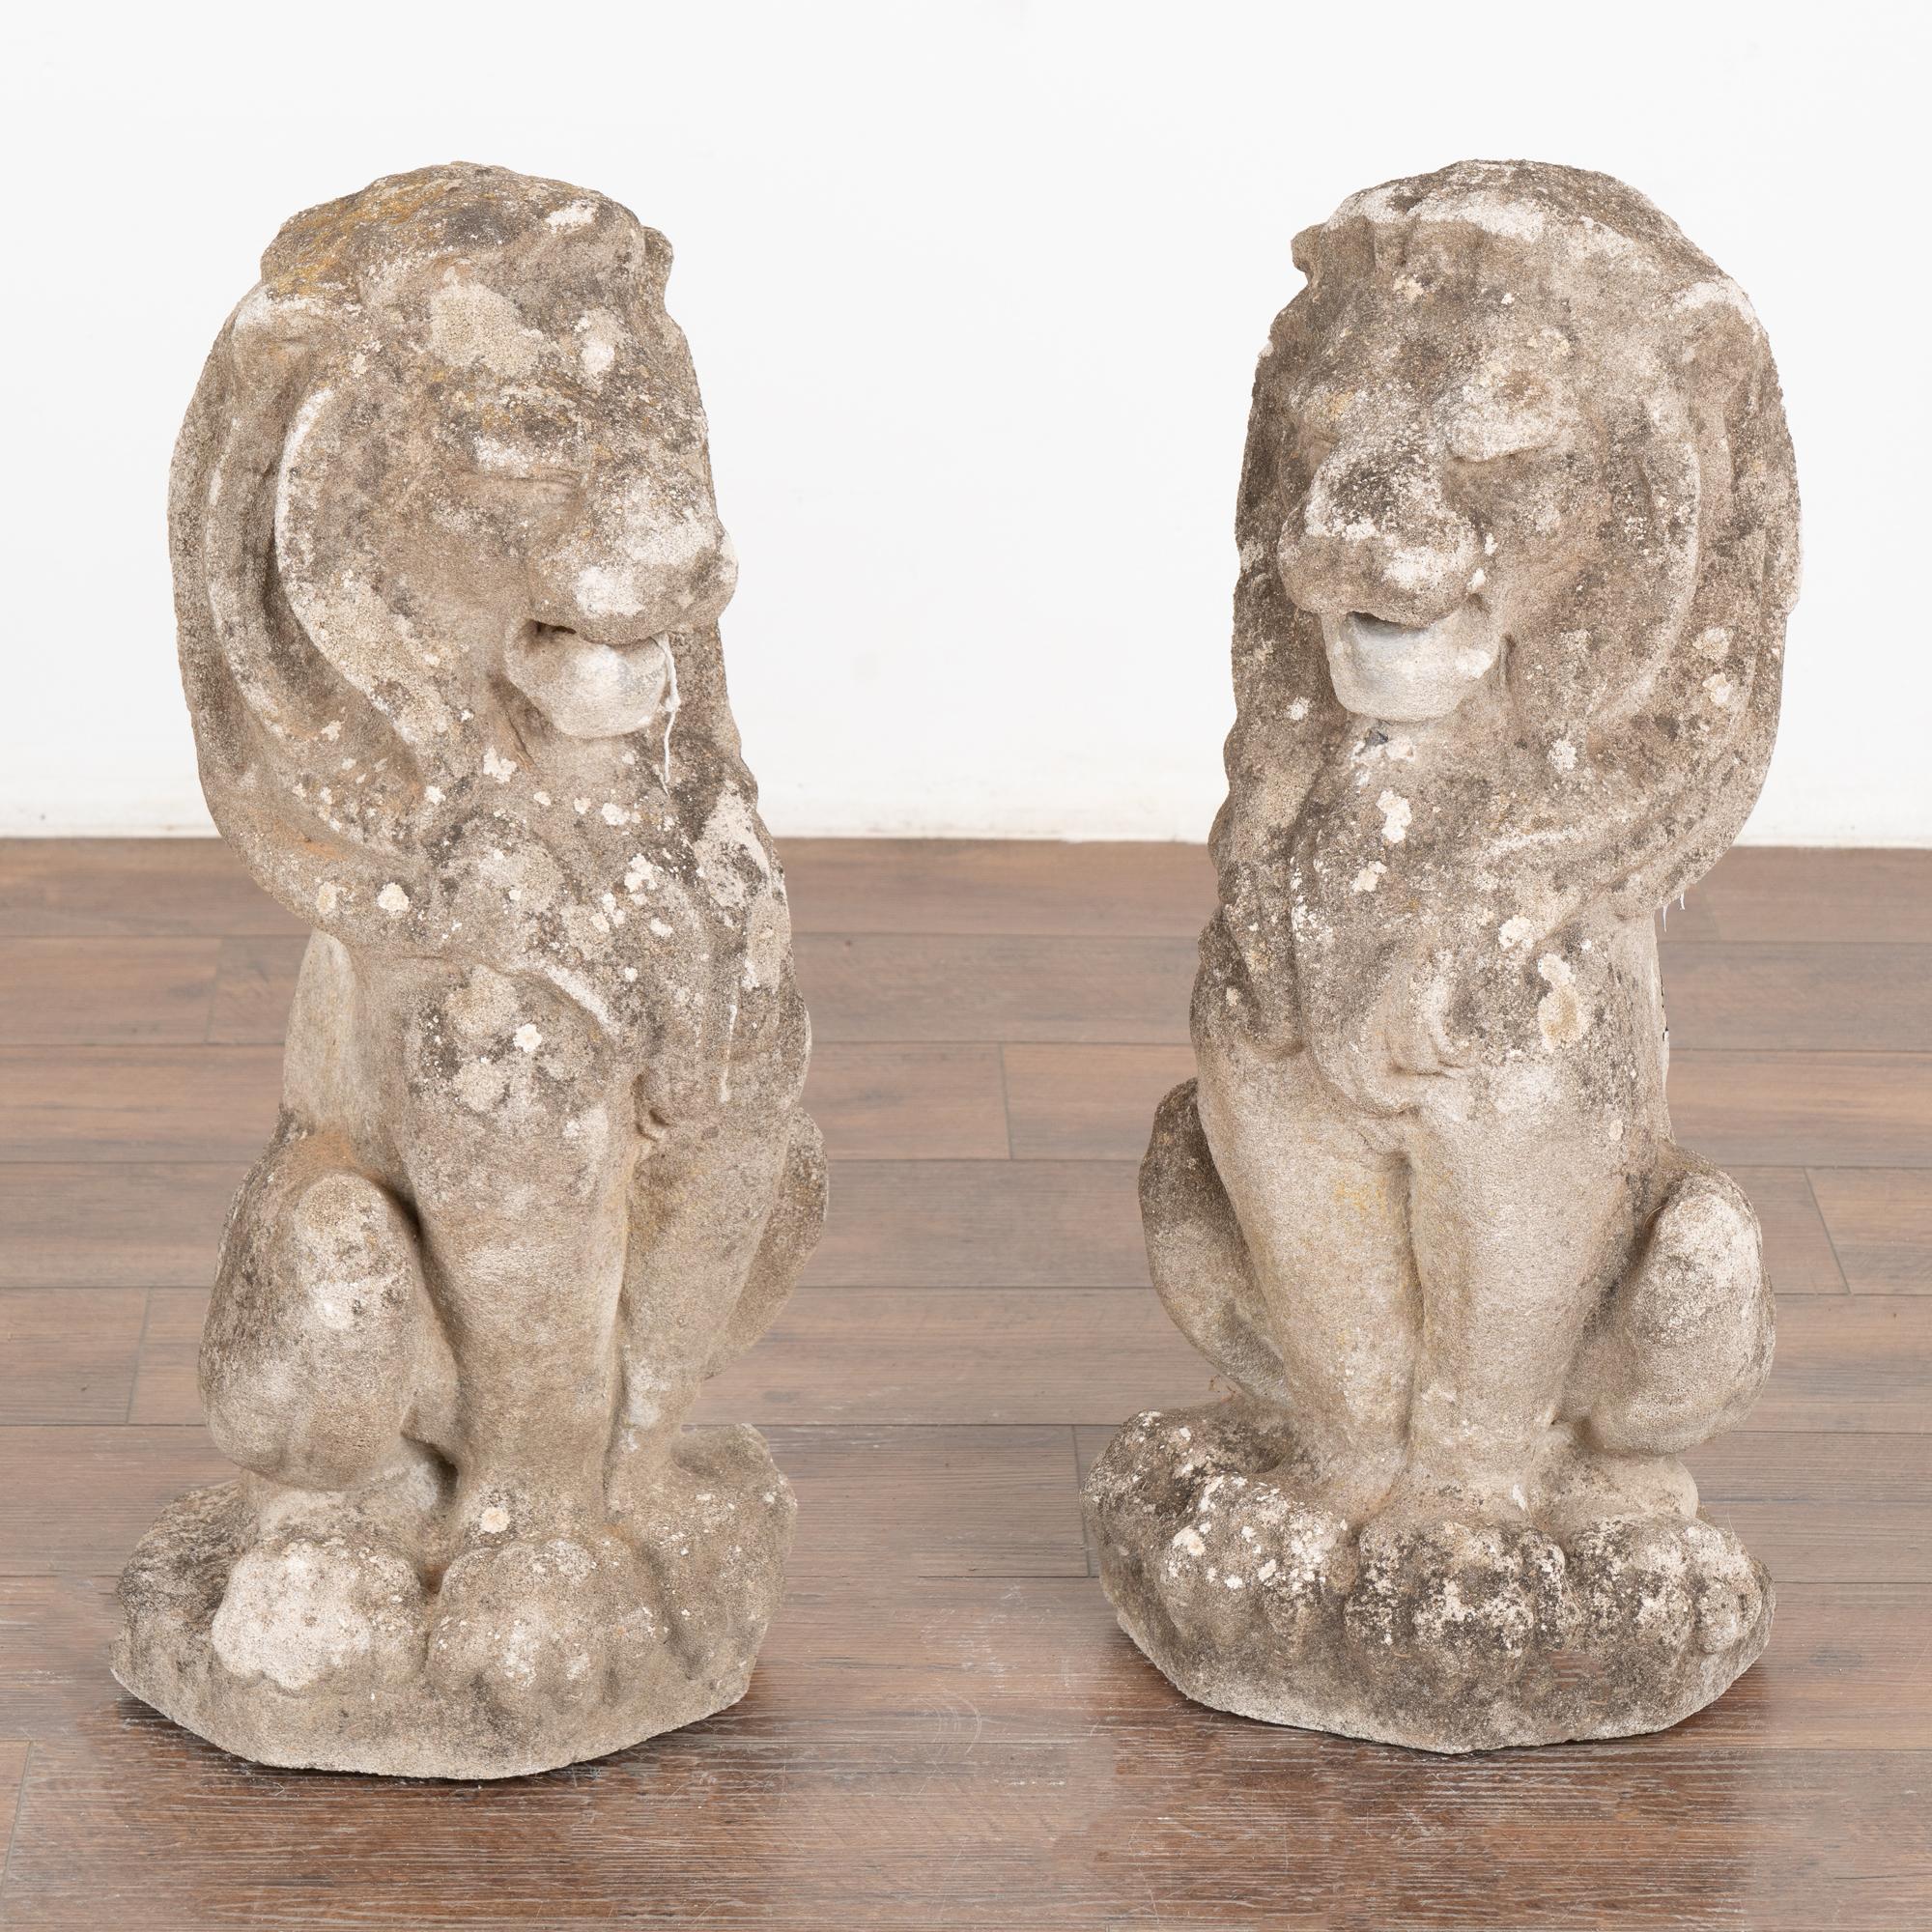 Paar französische Löwenstatuen aus Kalkstein, Anfang des 20. Jahrhunderts. Männliche Löwen mit prächtiger Mähne sind in sitzender Position.
Die gealterte Patina, einschließlich der Beschädigung der Oberfläche, der Abnutzung, der alten Flecken und